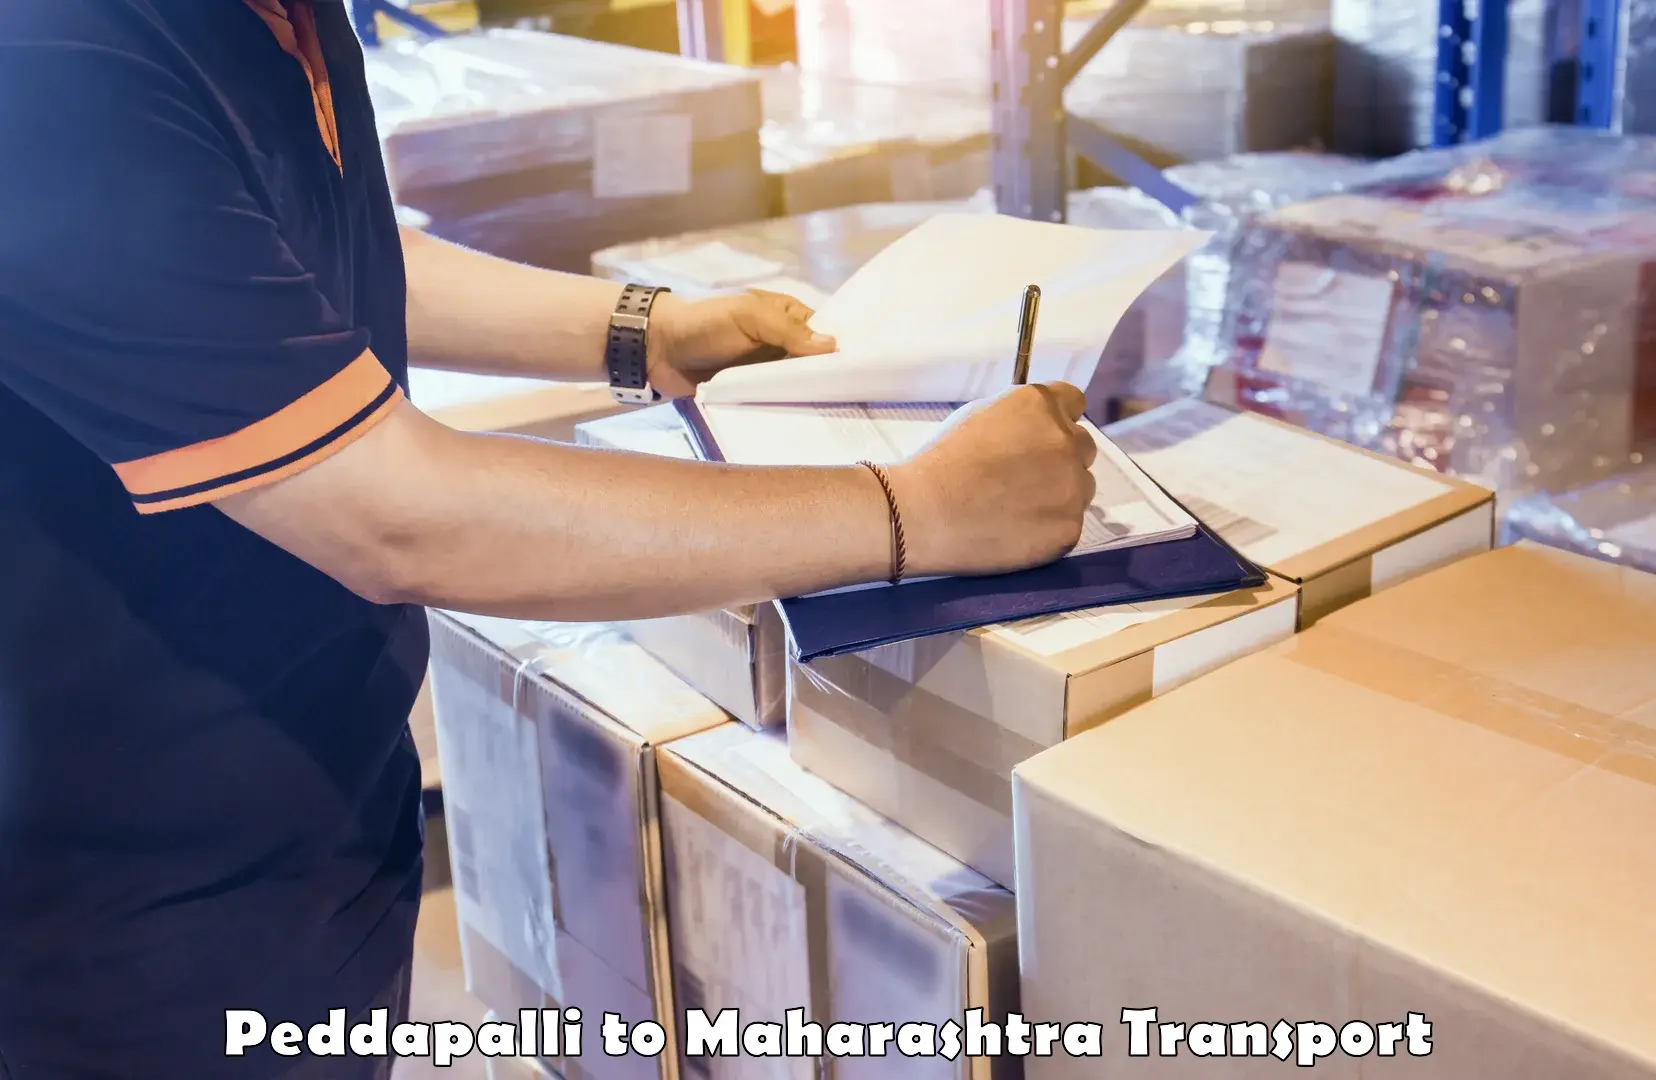 Container transport service Peddapalli to Walchandnagar